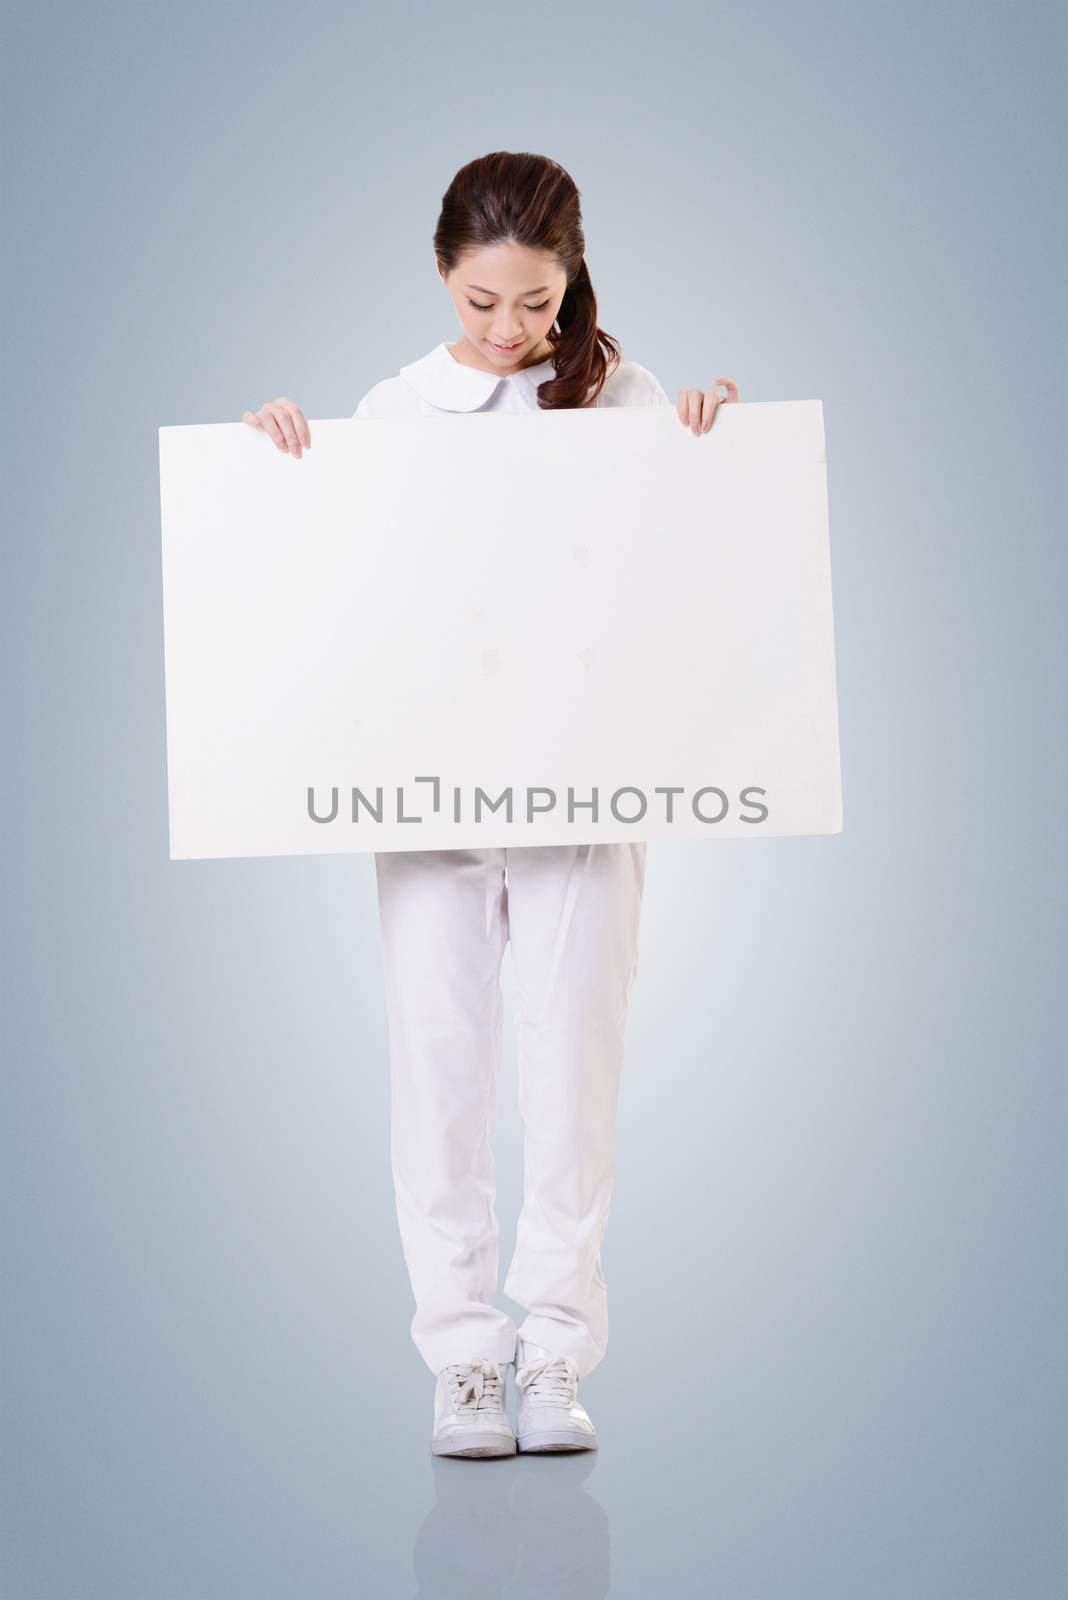 nurse with blank board by elwynn